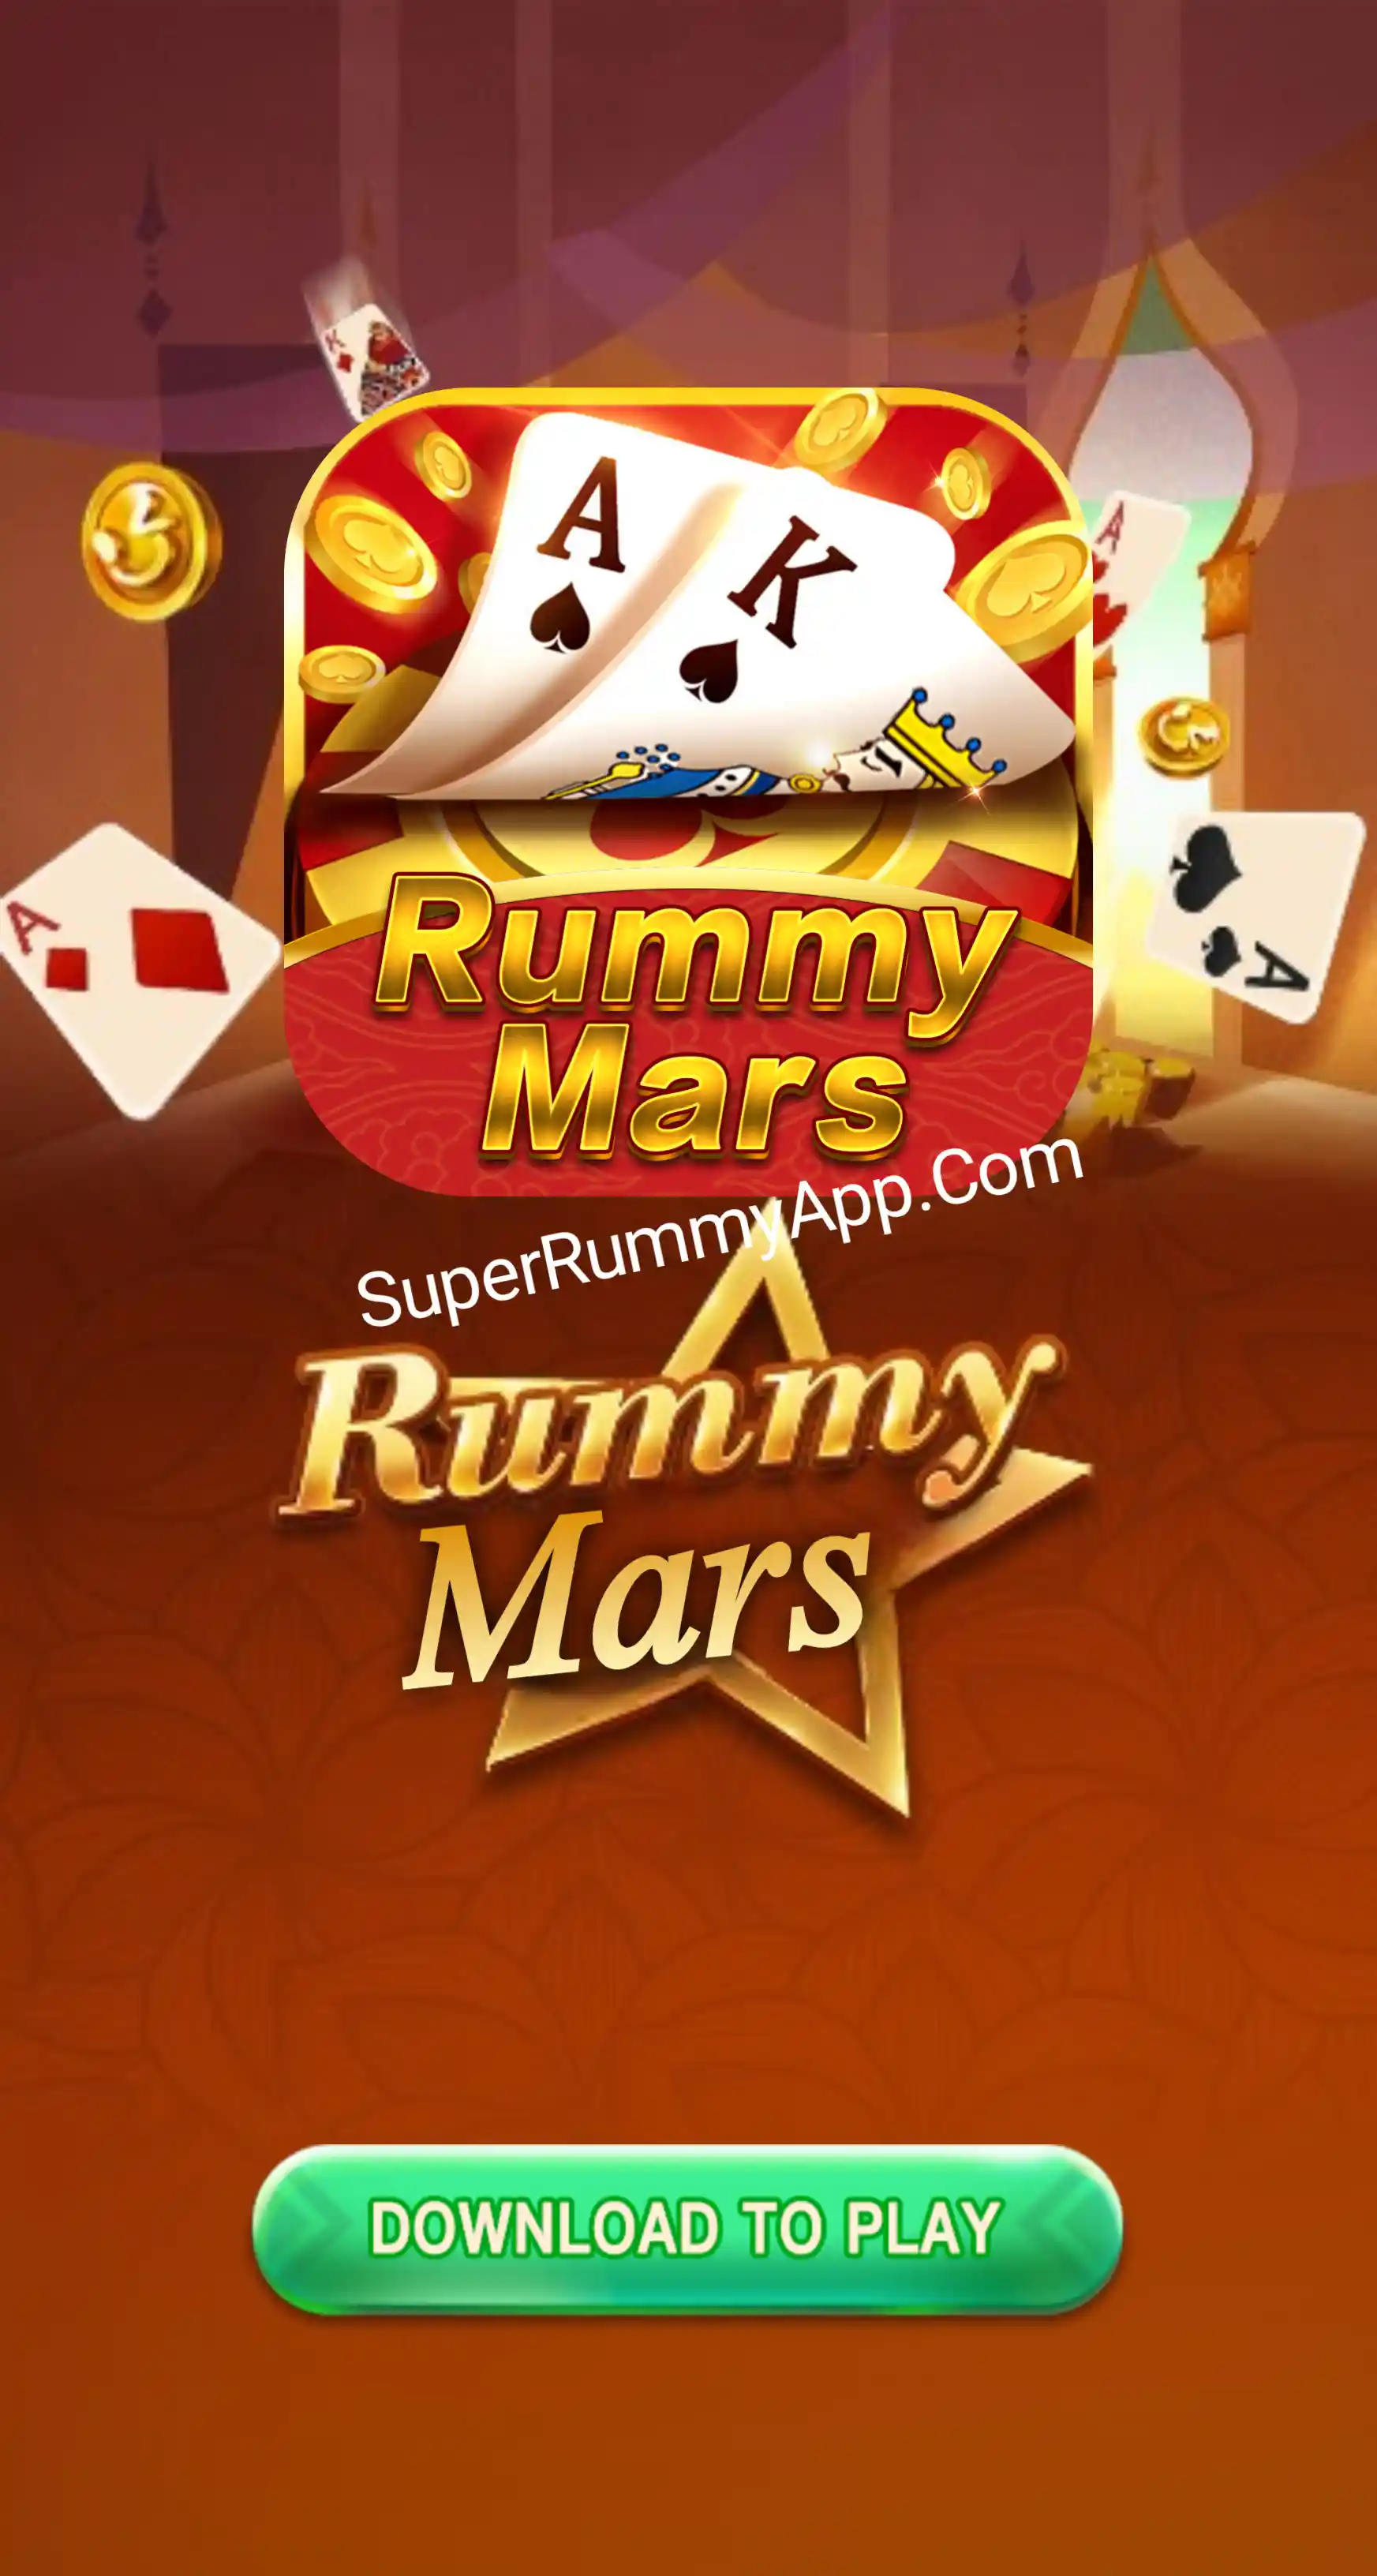 Rummy Mars Apk Download - Super Rummy App